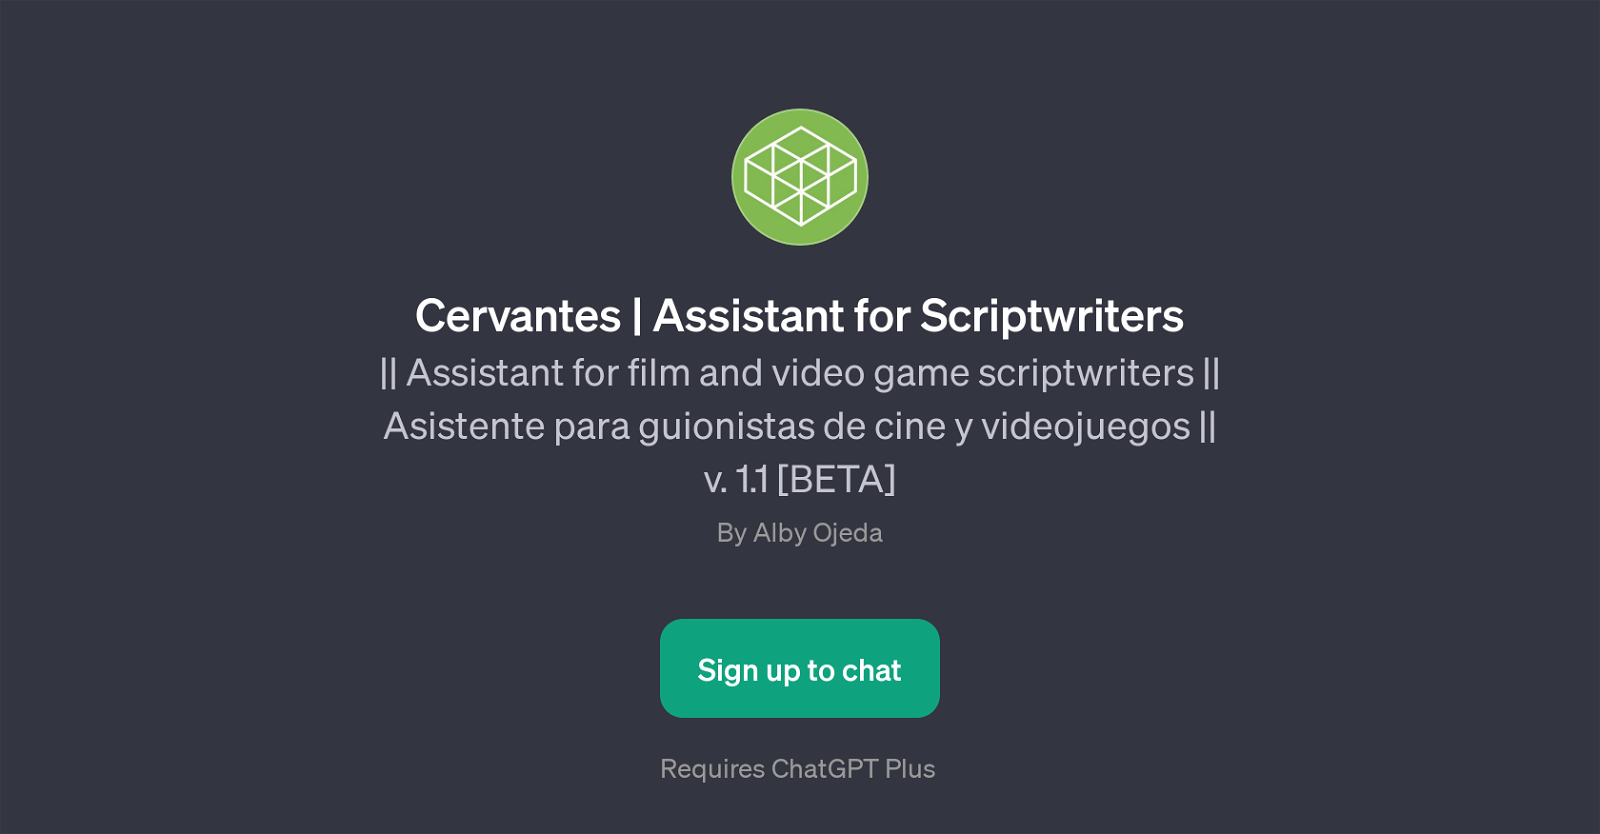 Cervantes website